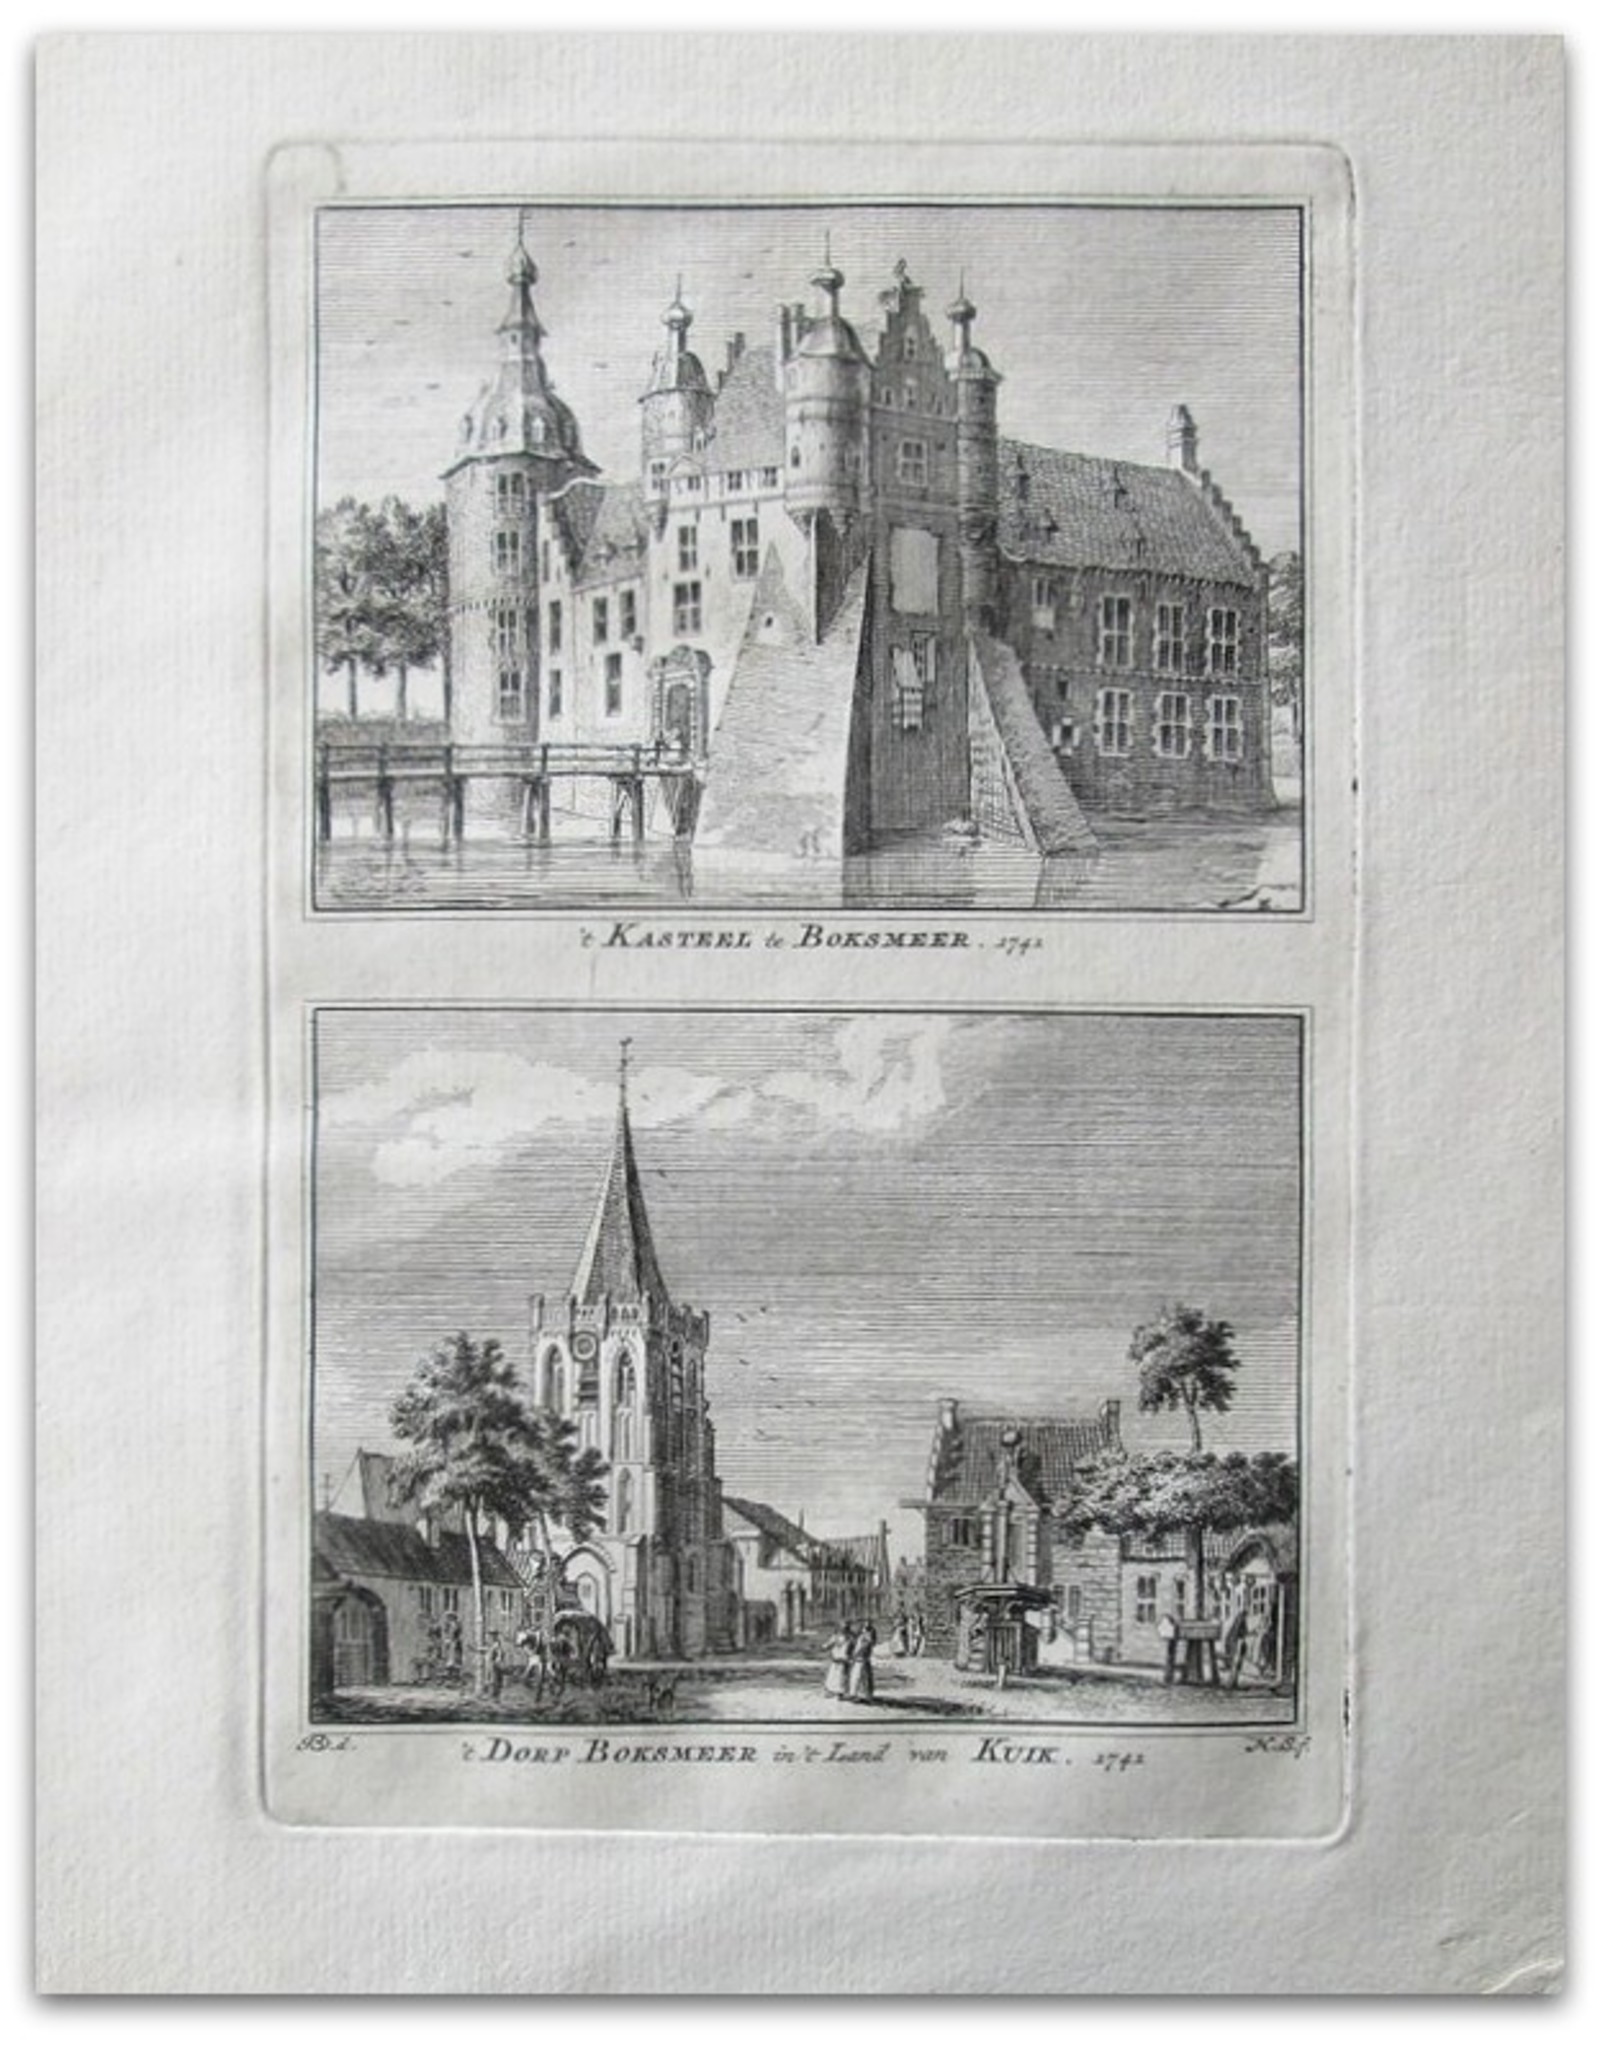 H. Spilman - t Kasteel te Boksmeer / 't Dorp Boksmeer in 't Land van Kuik 1741